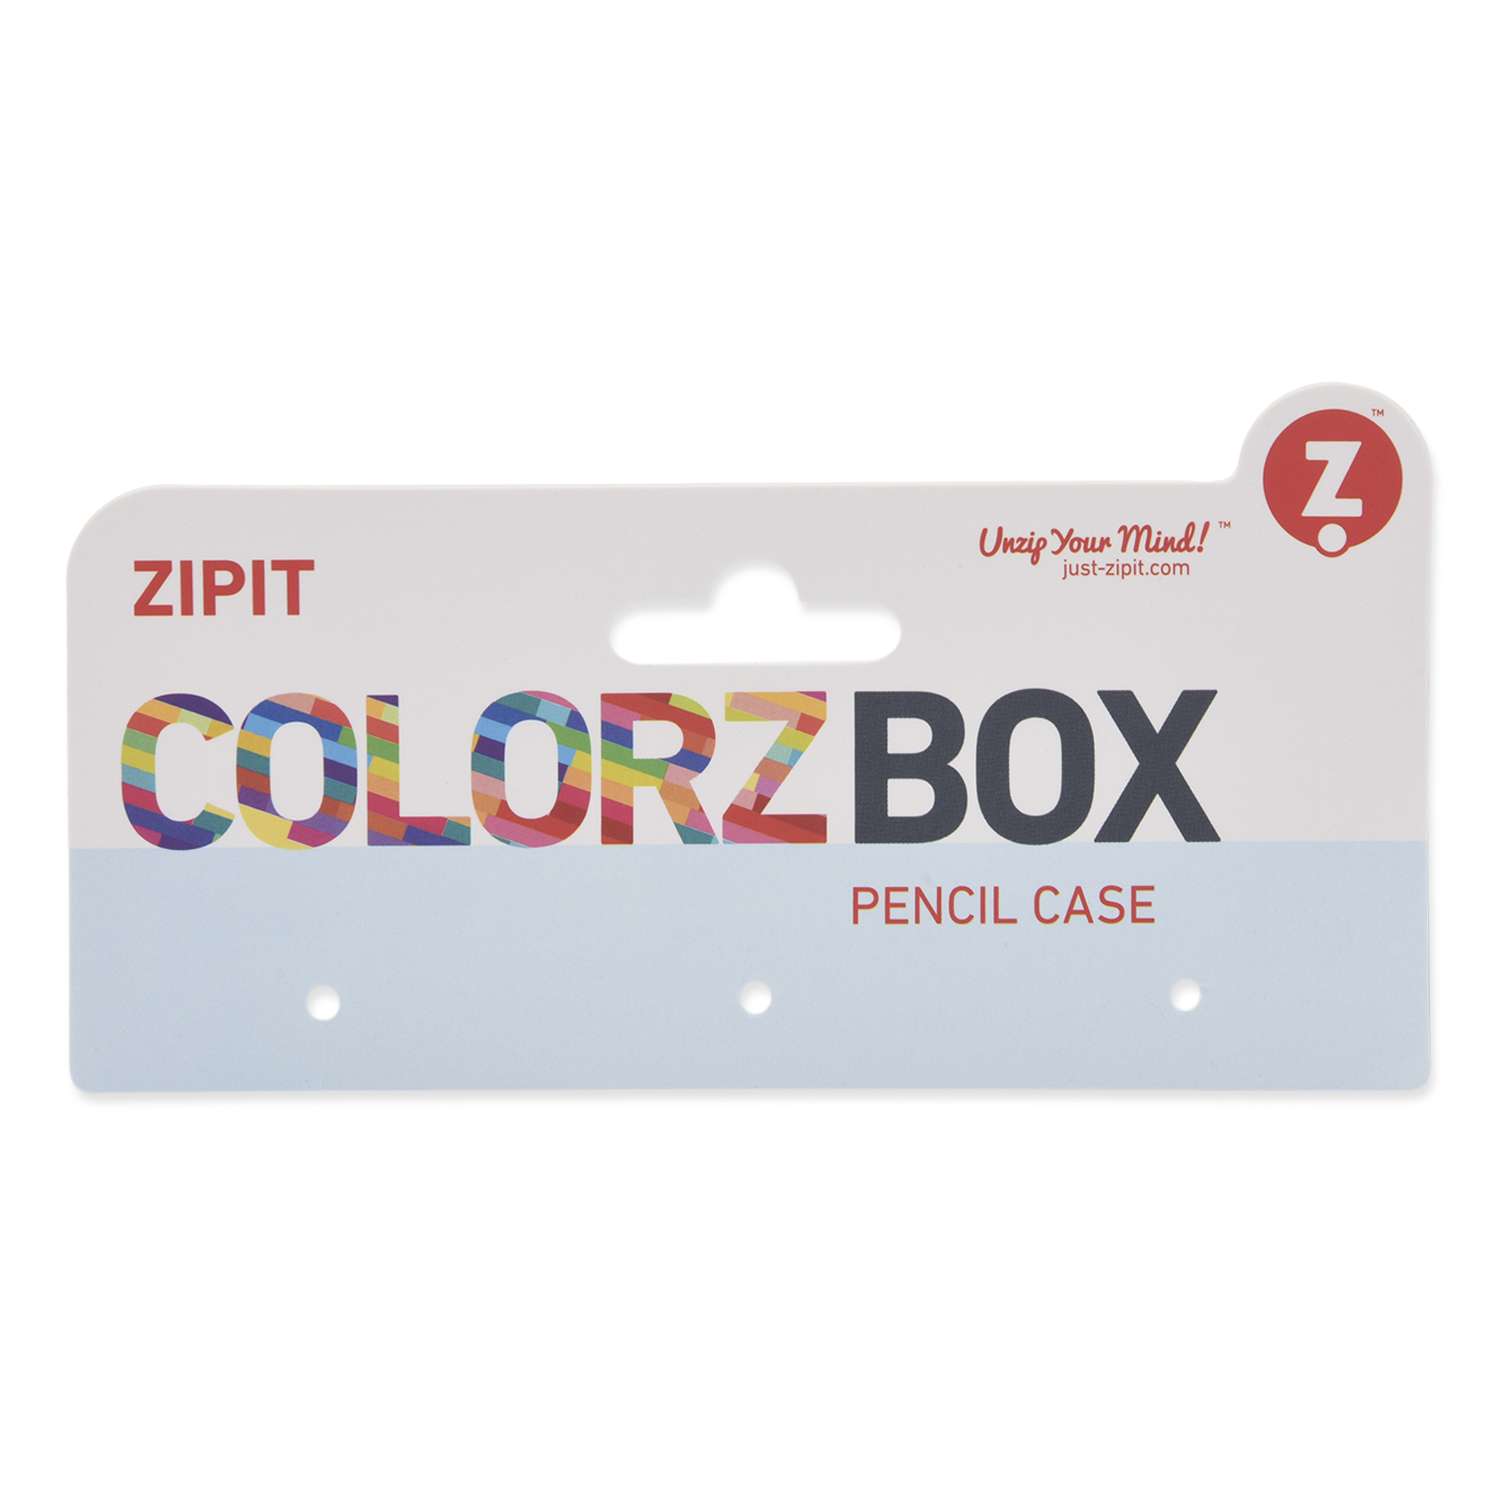 Пенал Zipit Colorz Box - фото 6